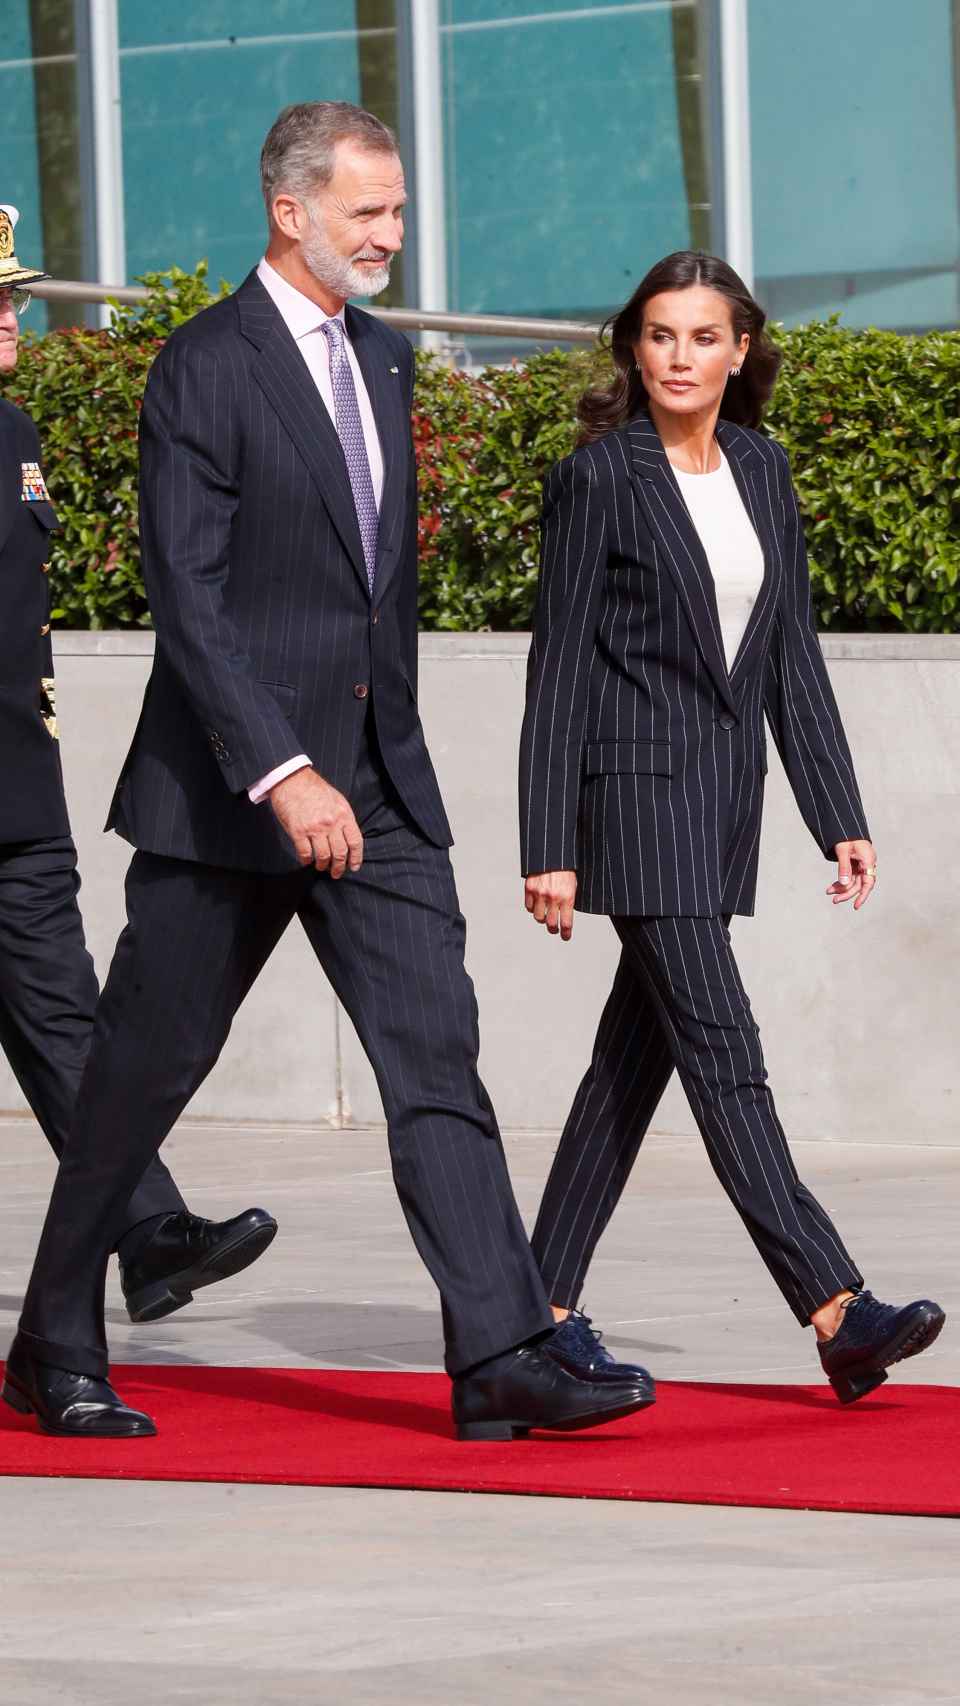 La reina Letizia ha elegido un traje de raya diplomática y zapatos planos.